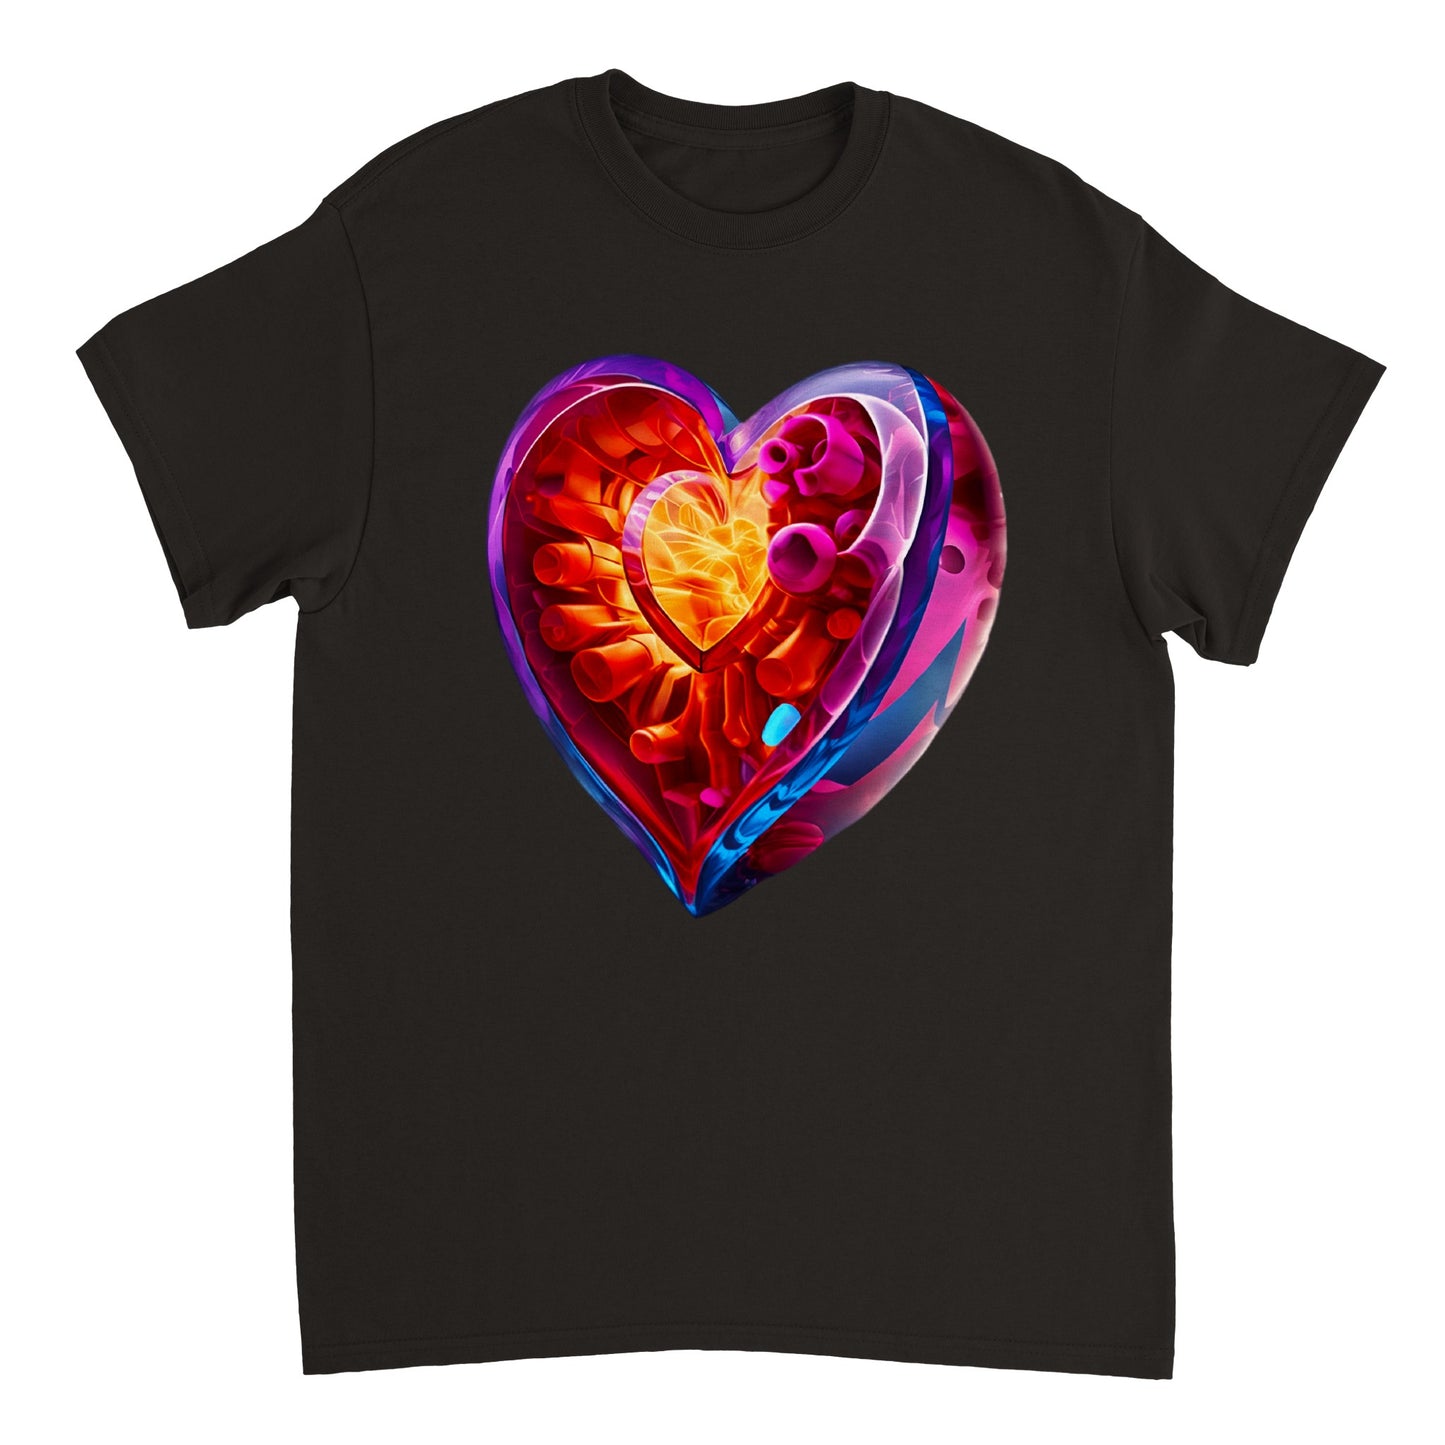 Love Heart - Heavyweight Unisex Crewneck T-shirt 113